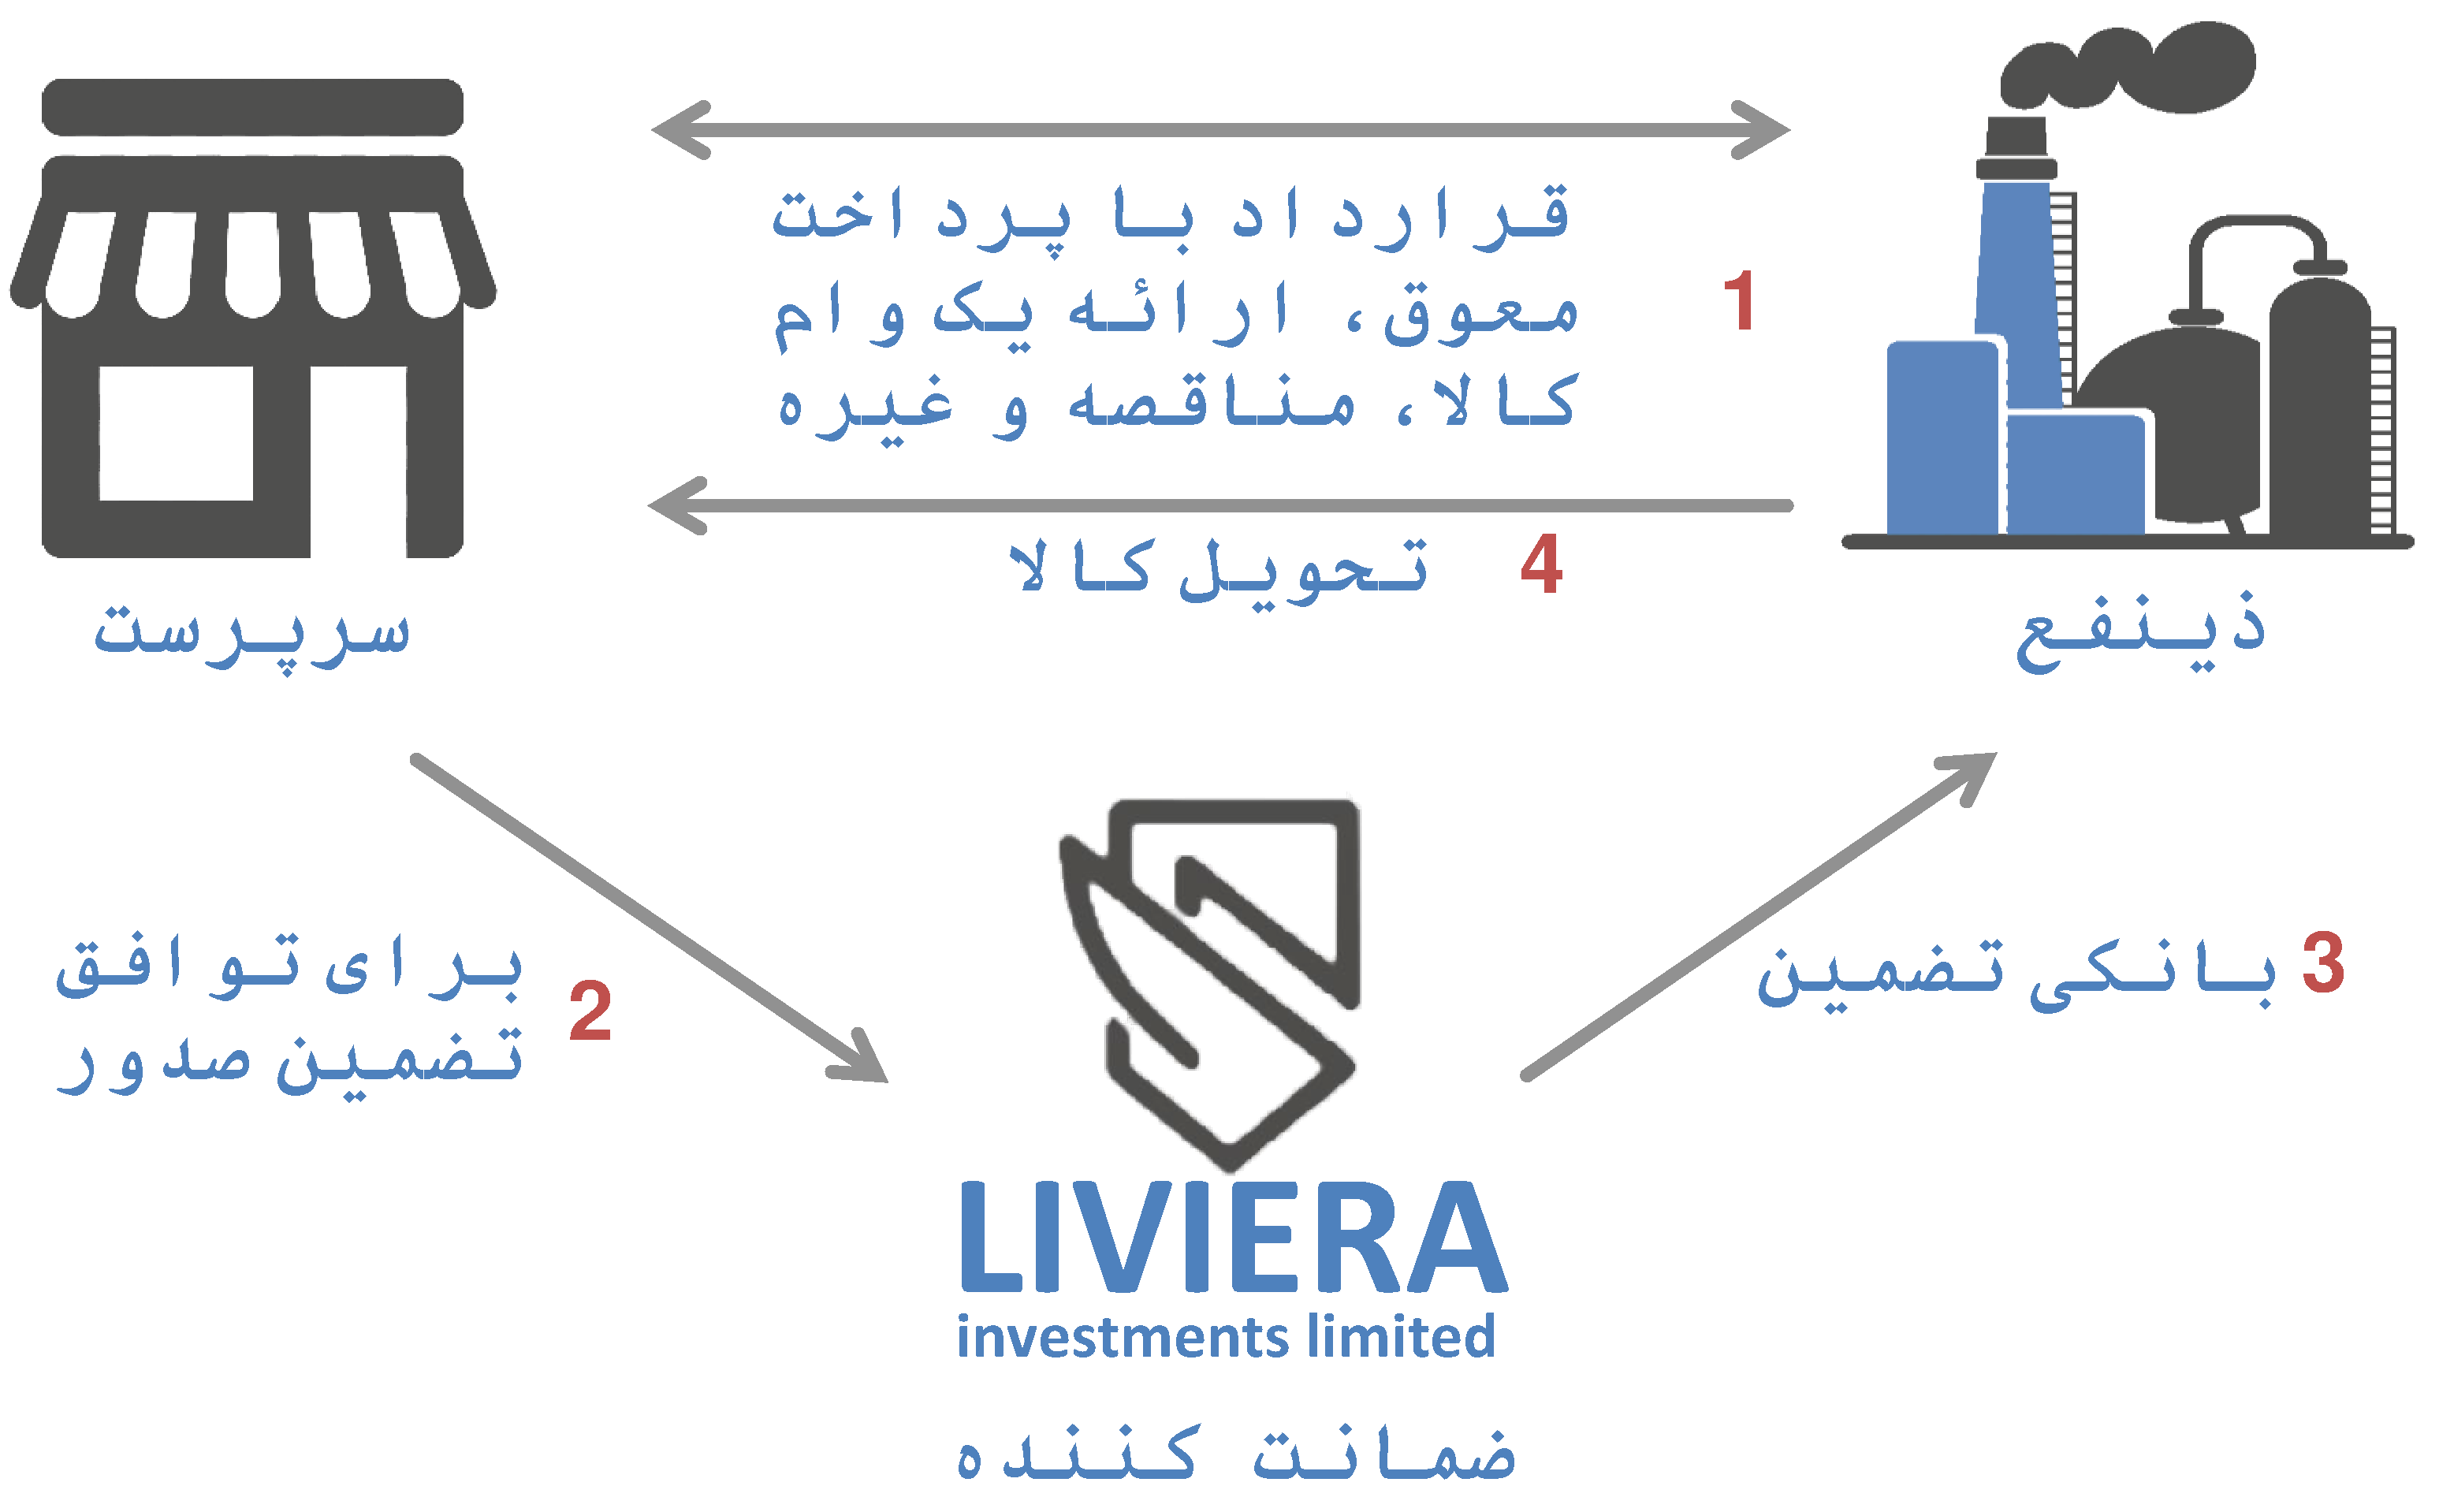 طرح تضمین بانک با سرمایه گذاری های Liviera Ltd